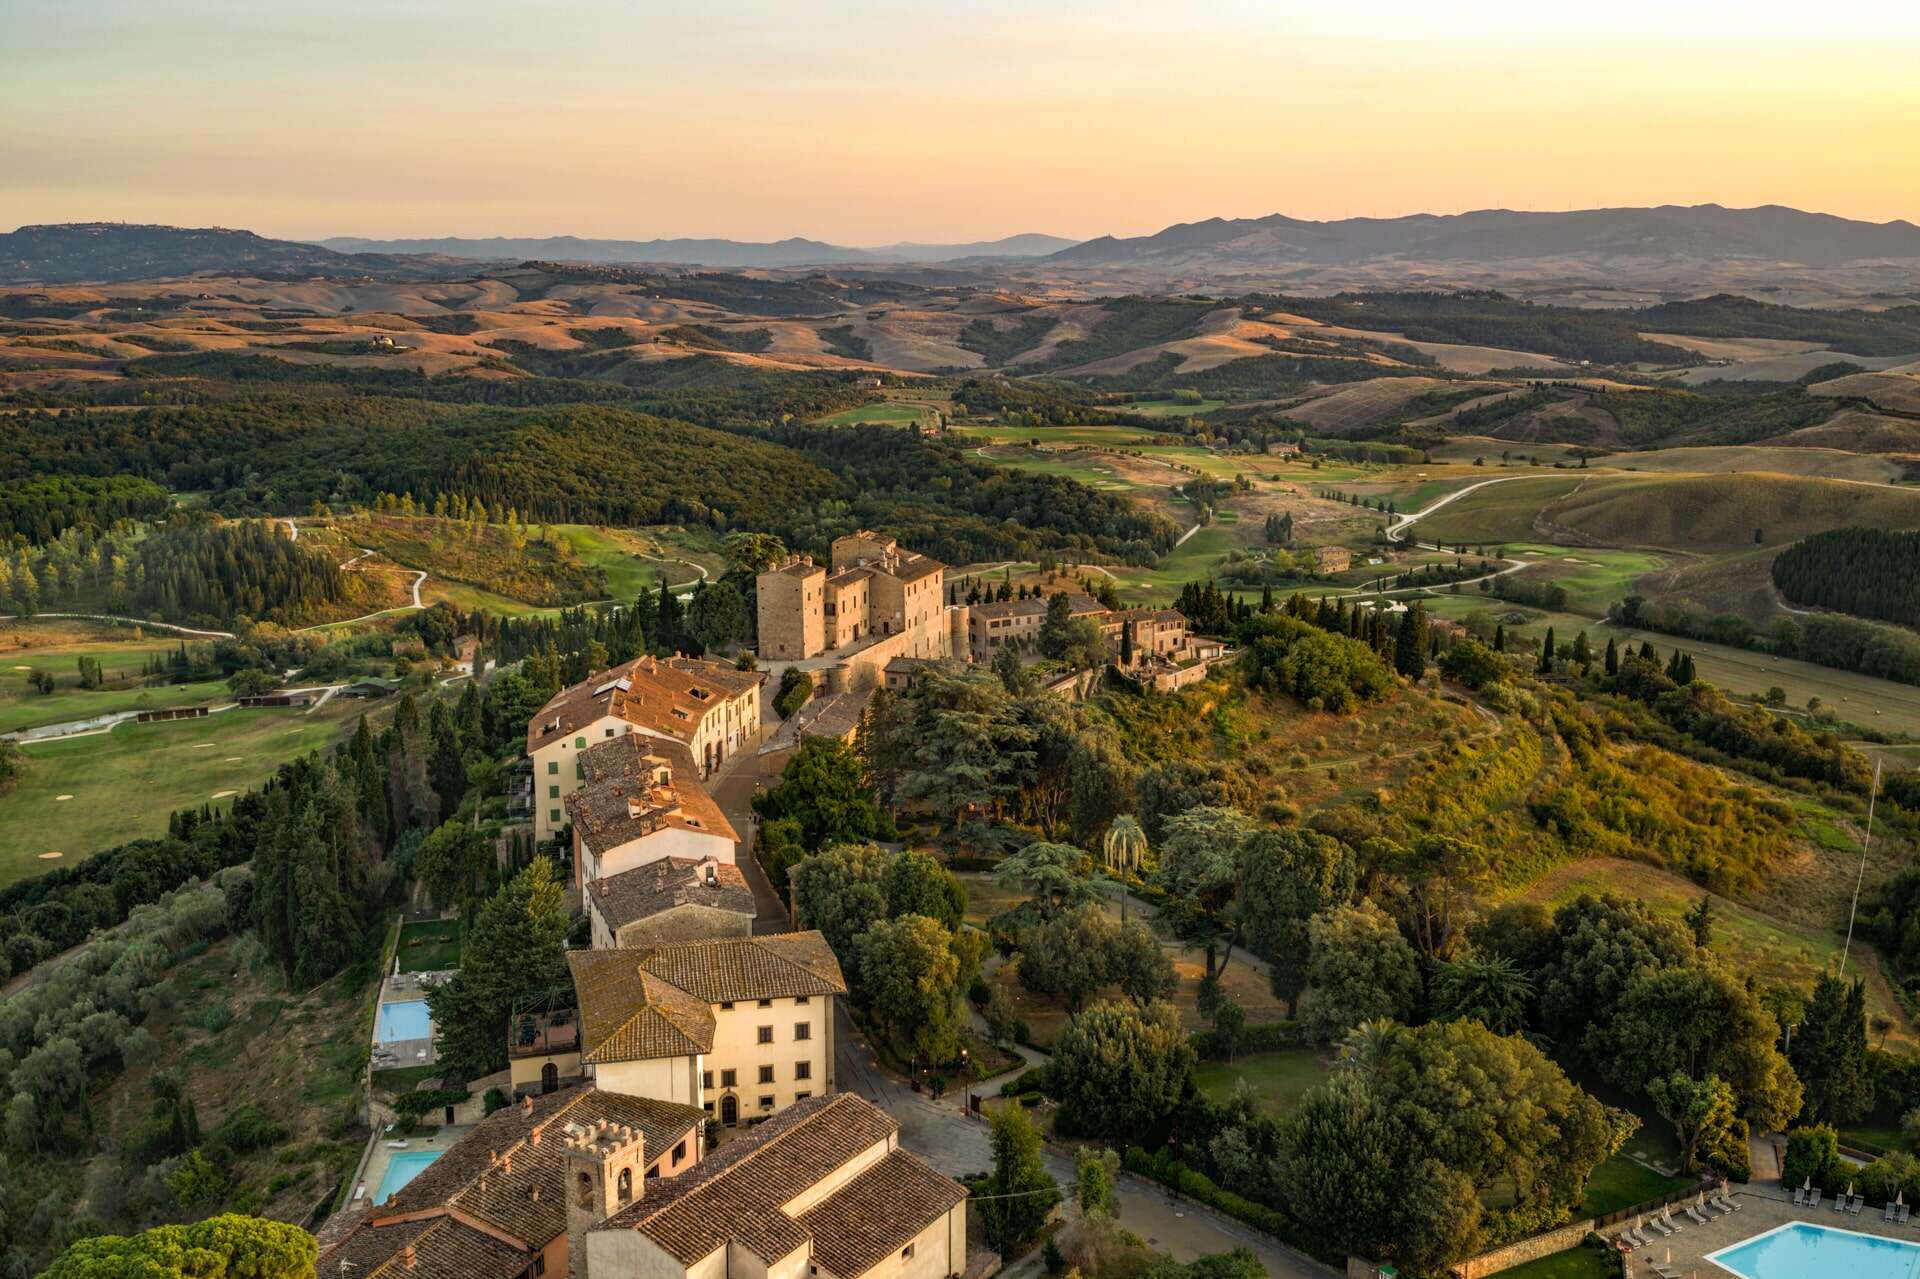 castelfalfi resort tuscany from above